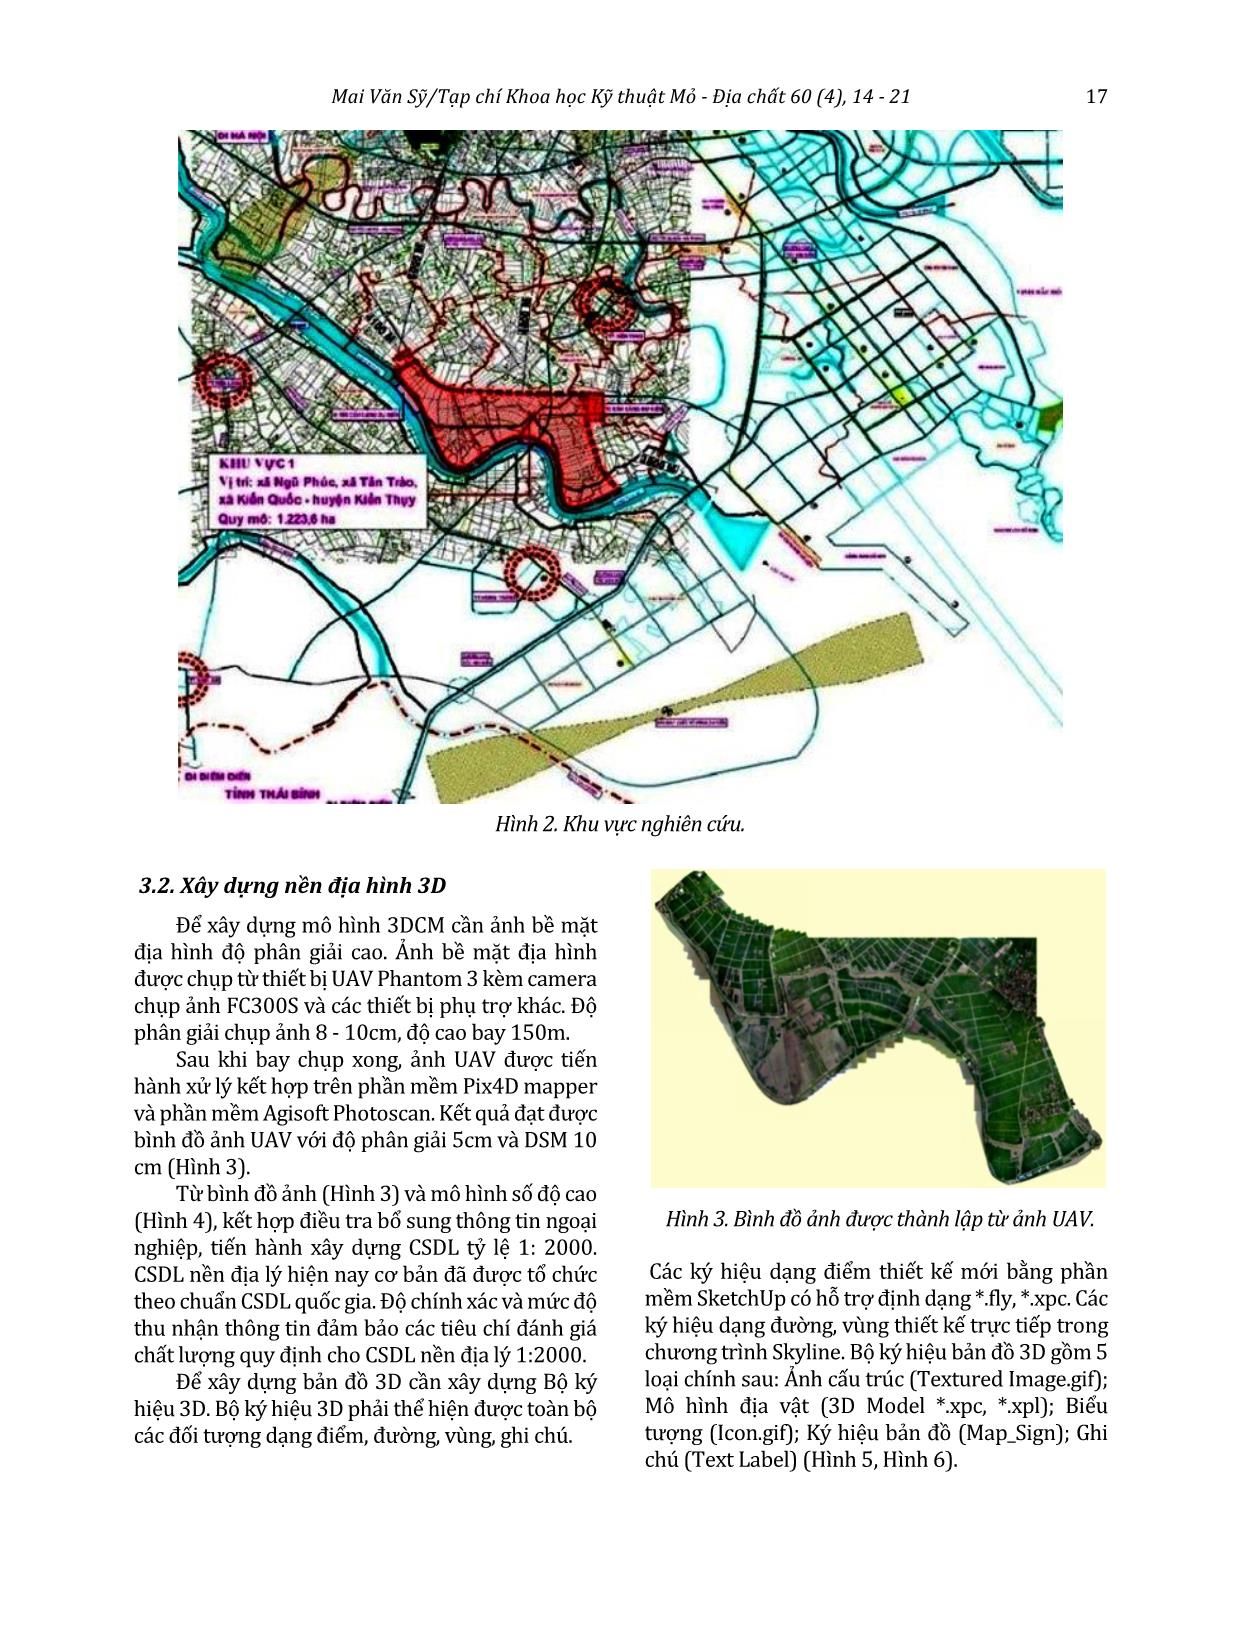 Ứng dụng mô hình thành phố ảo trong quy hoạch và quản lý đô thị tại khu công nghiệp Kiến Thụy - Hải Phòng trang 4